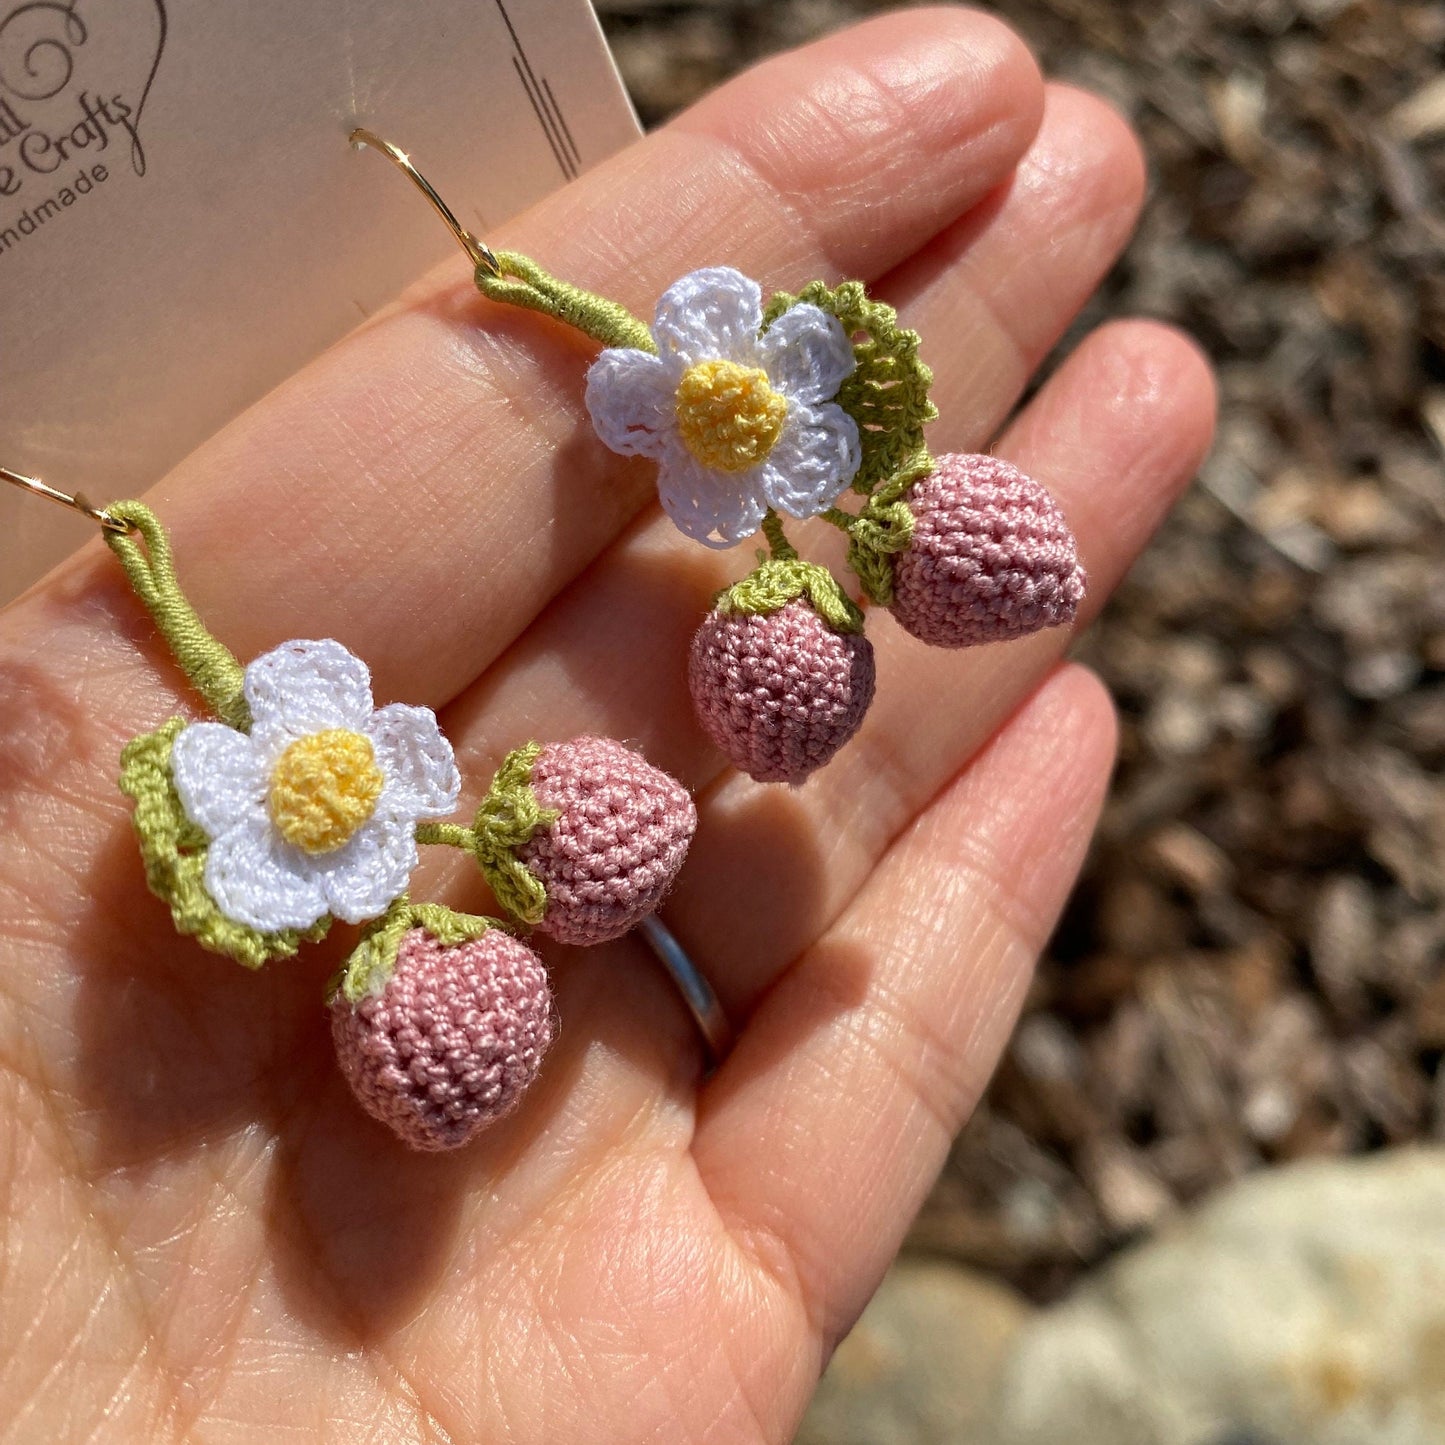 Pink twin Strawberry flower crochet dangle earrings/Microcrochet/14k gold jewelry/Summer berry fruit/Kawaii jewelry/Ship from US